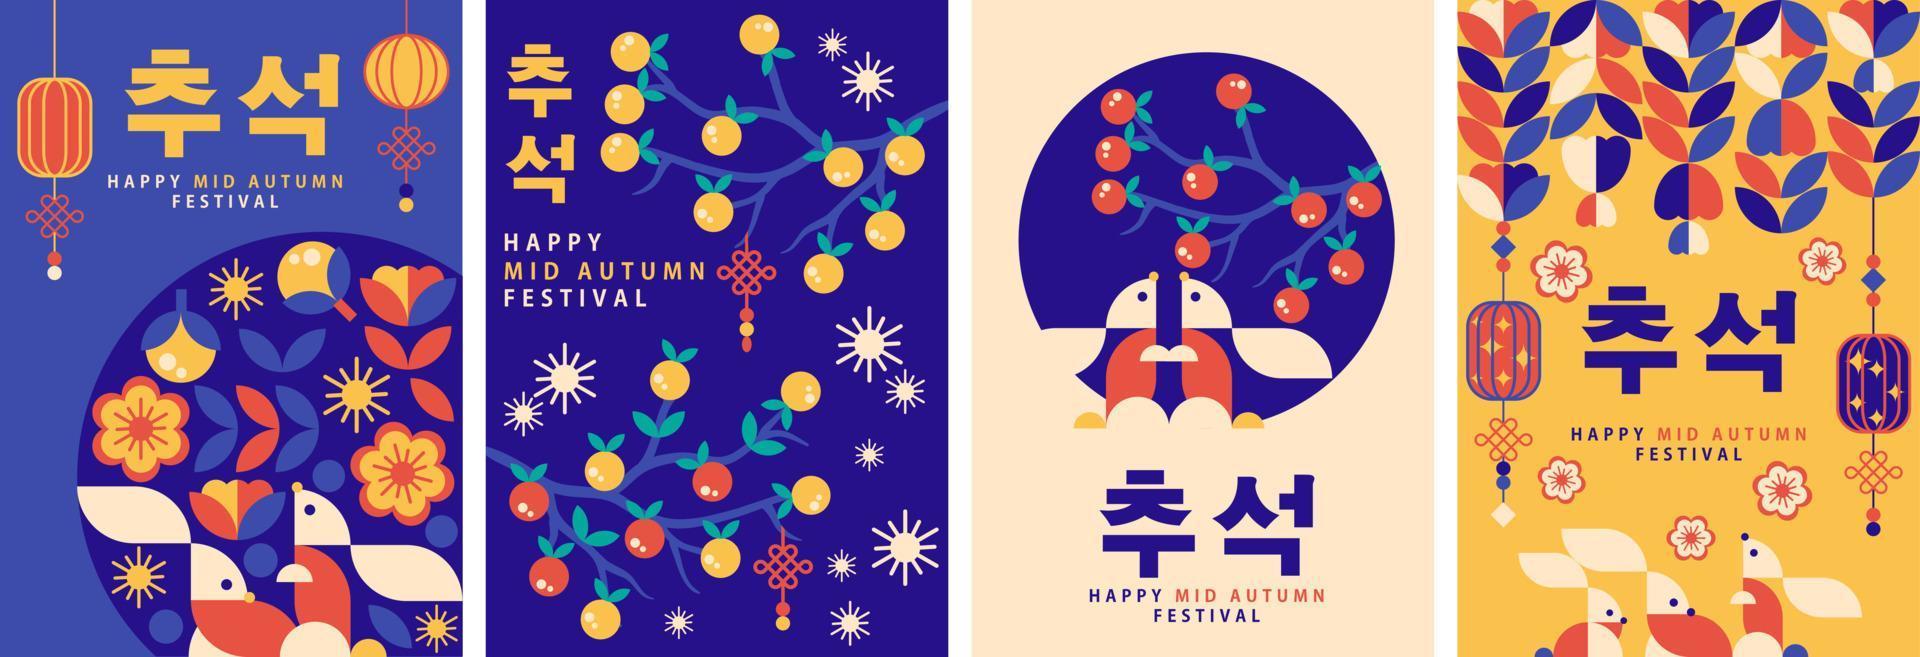 cartaz geométrico do festival coreano do meio outono, plano de fundo, cartão de felicitações, coleção de conjuntos de vetores de capa de livro